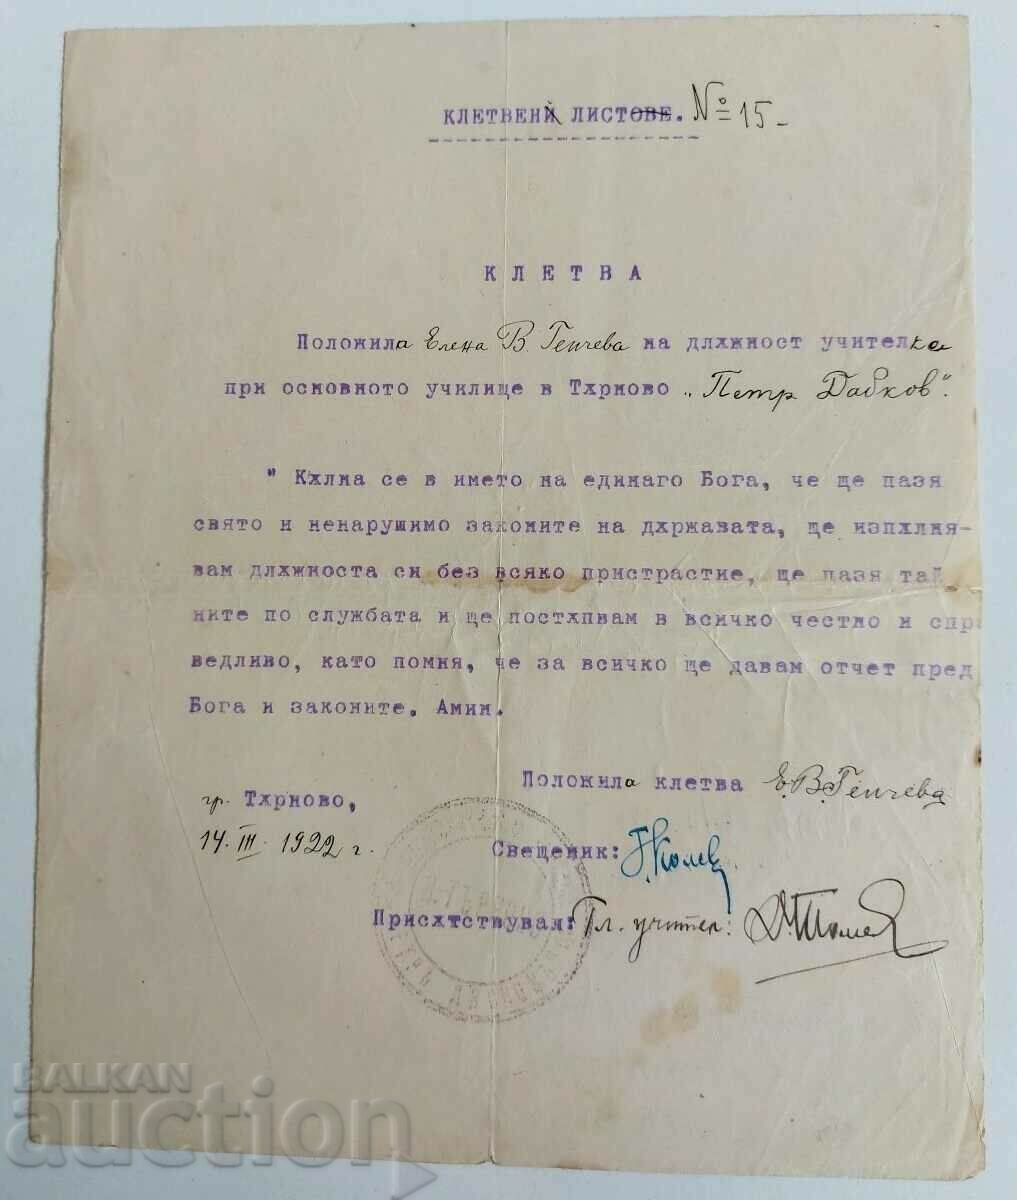 1922 FIȘA DE JURĂMÂNTUL JURĂMÂNTUL ÎNVĂȚĂTOR VOI DA SOȚ LUI DUMNEZEU ȘI